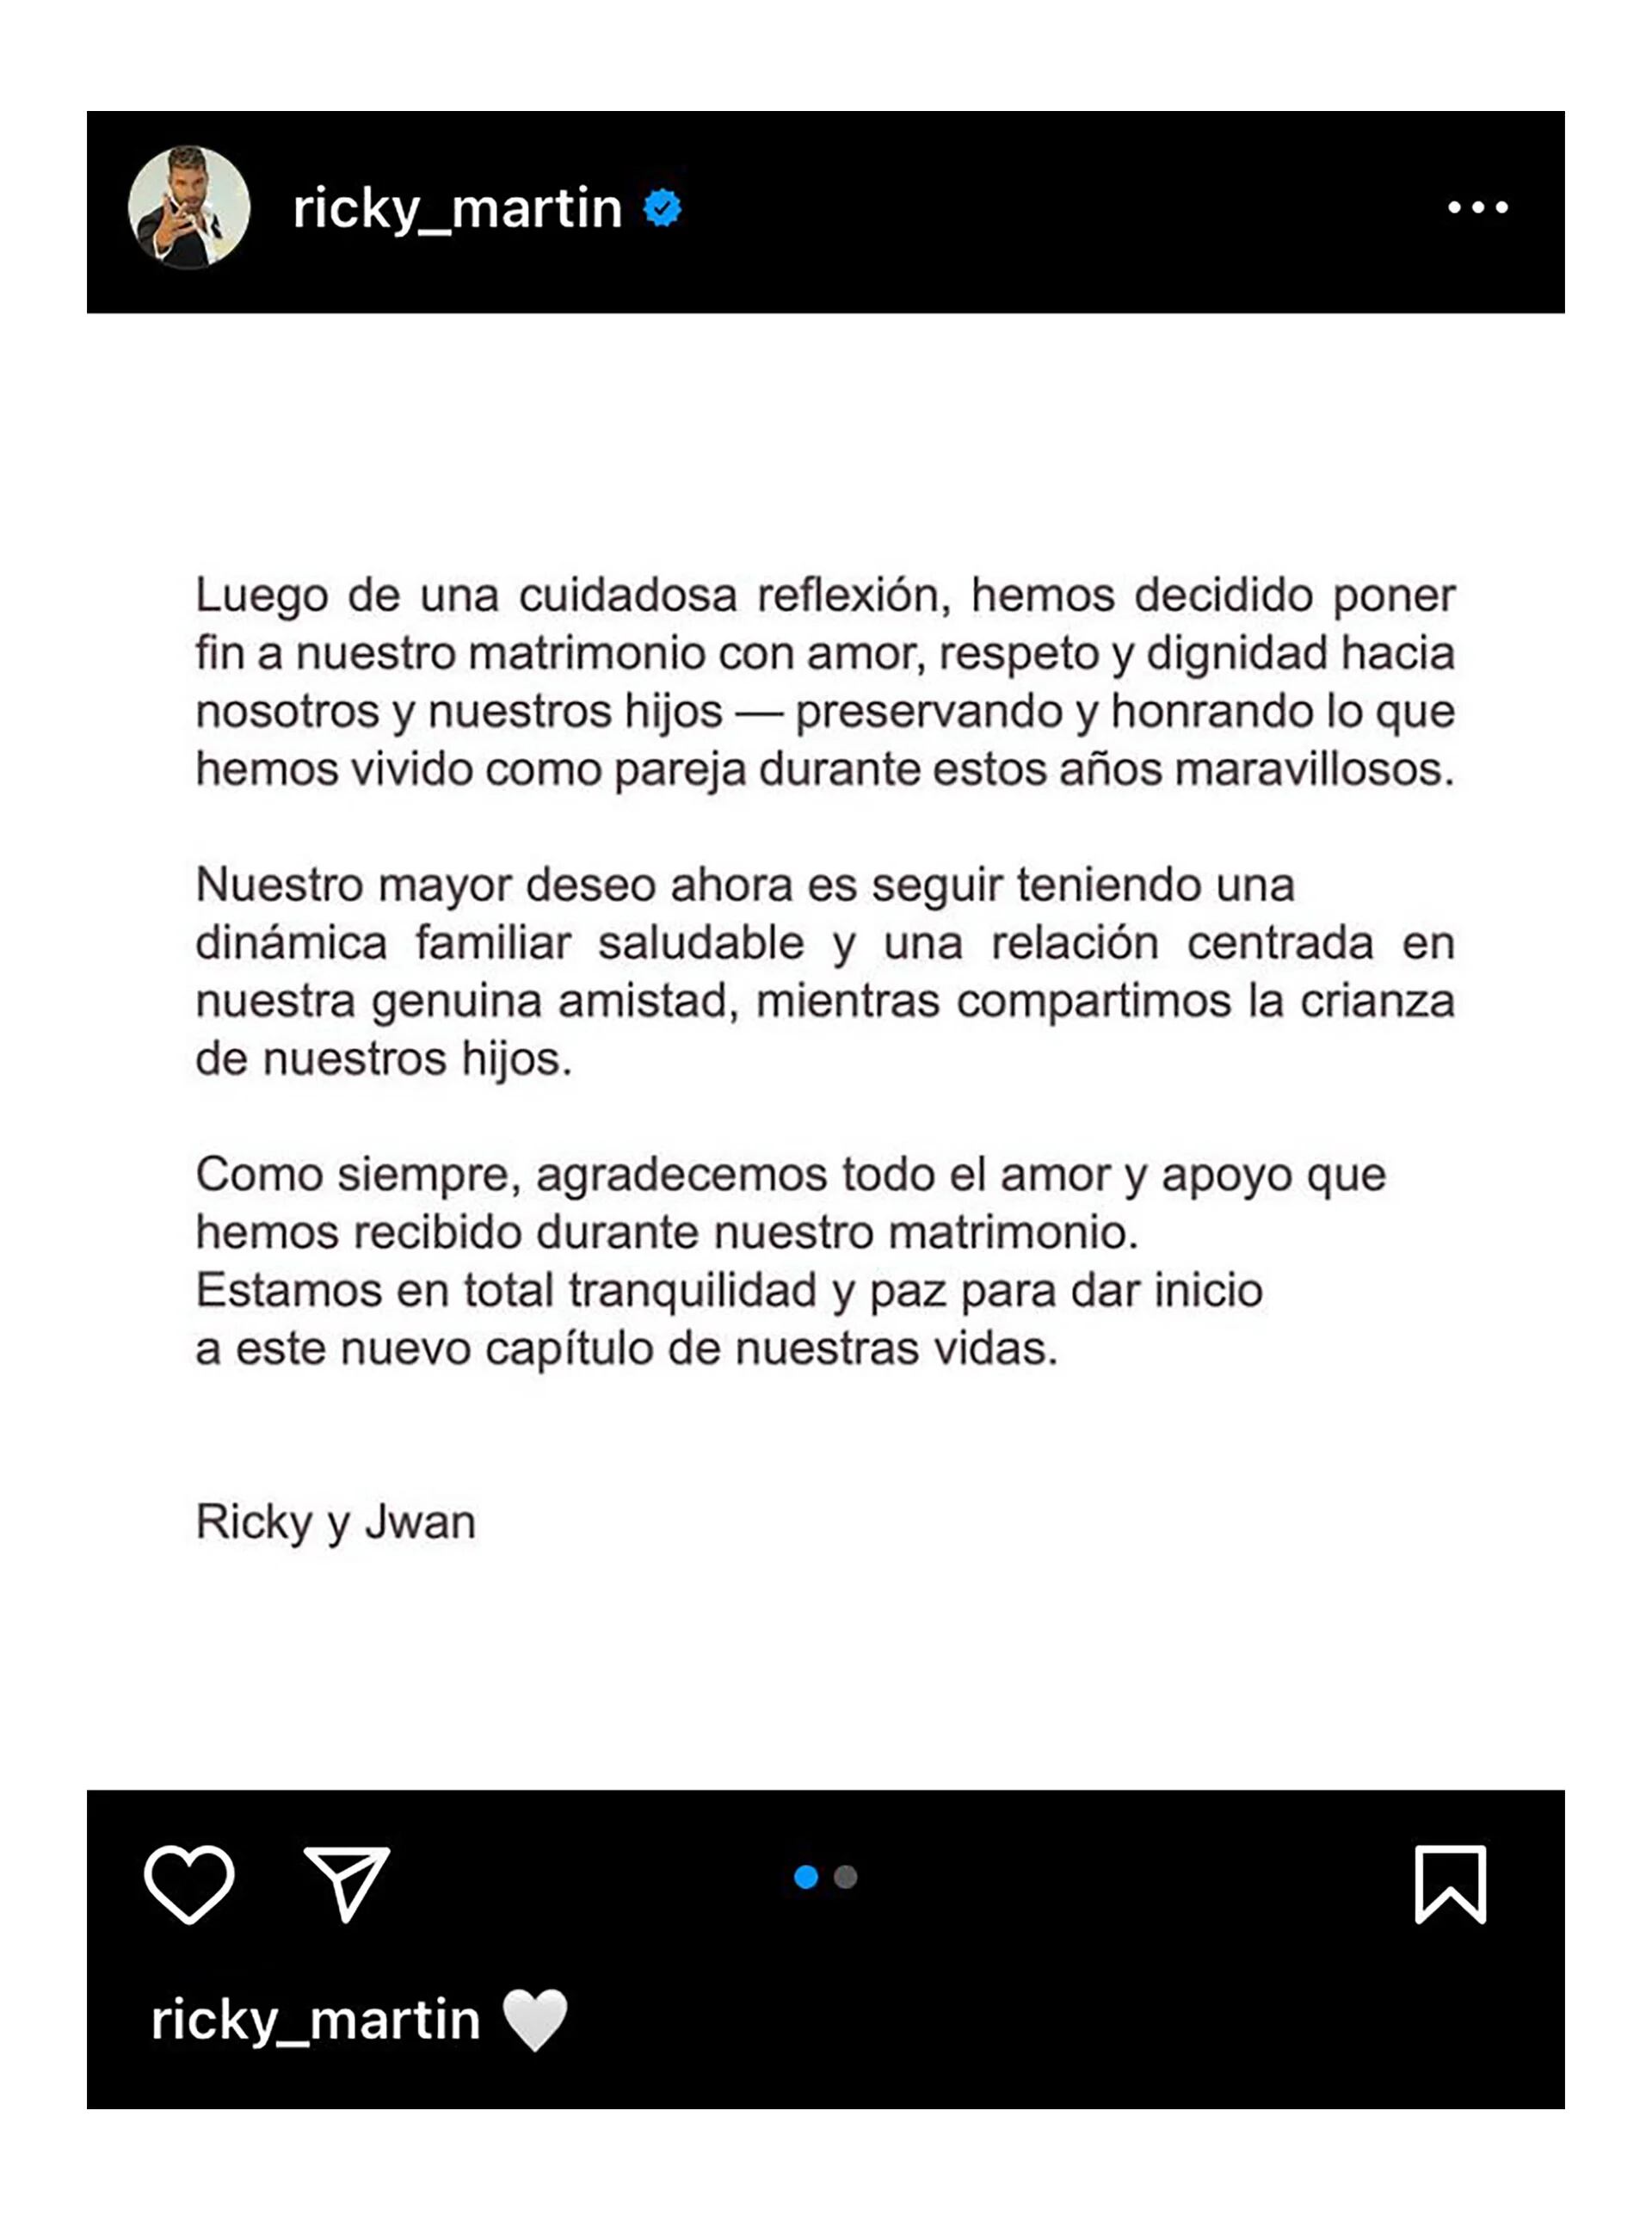 Ricky Martin confirmó su separación en Instagram
